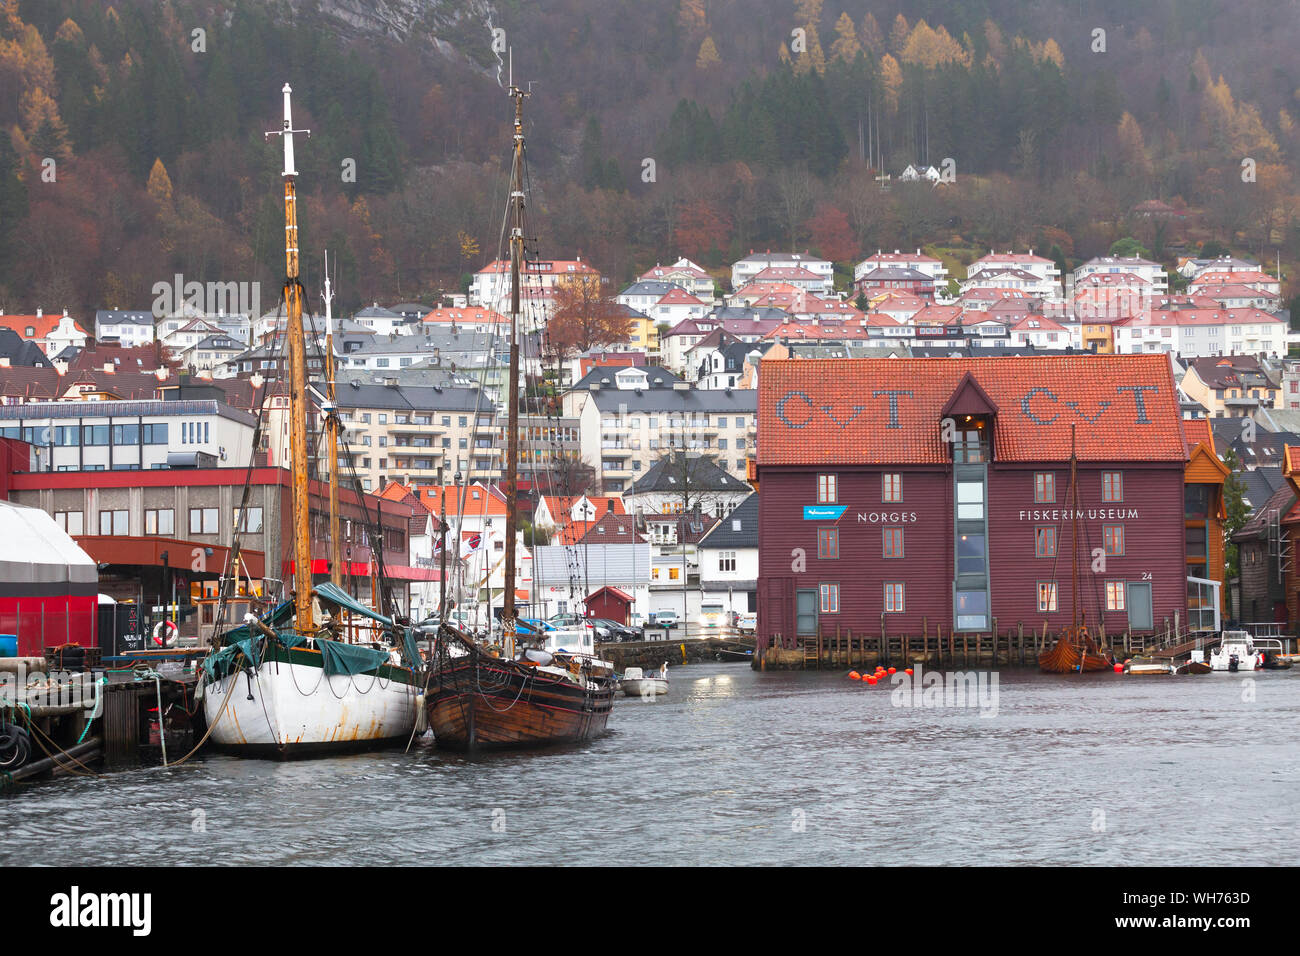 Bergen, Norwegen - 16 November 2017: Küsten Stadtbild mit Booten und Norwegen Fischerei Museum Fassade Stockfoto